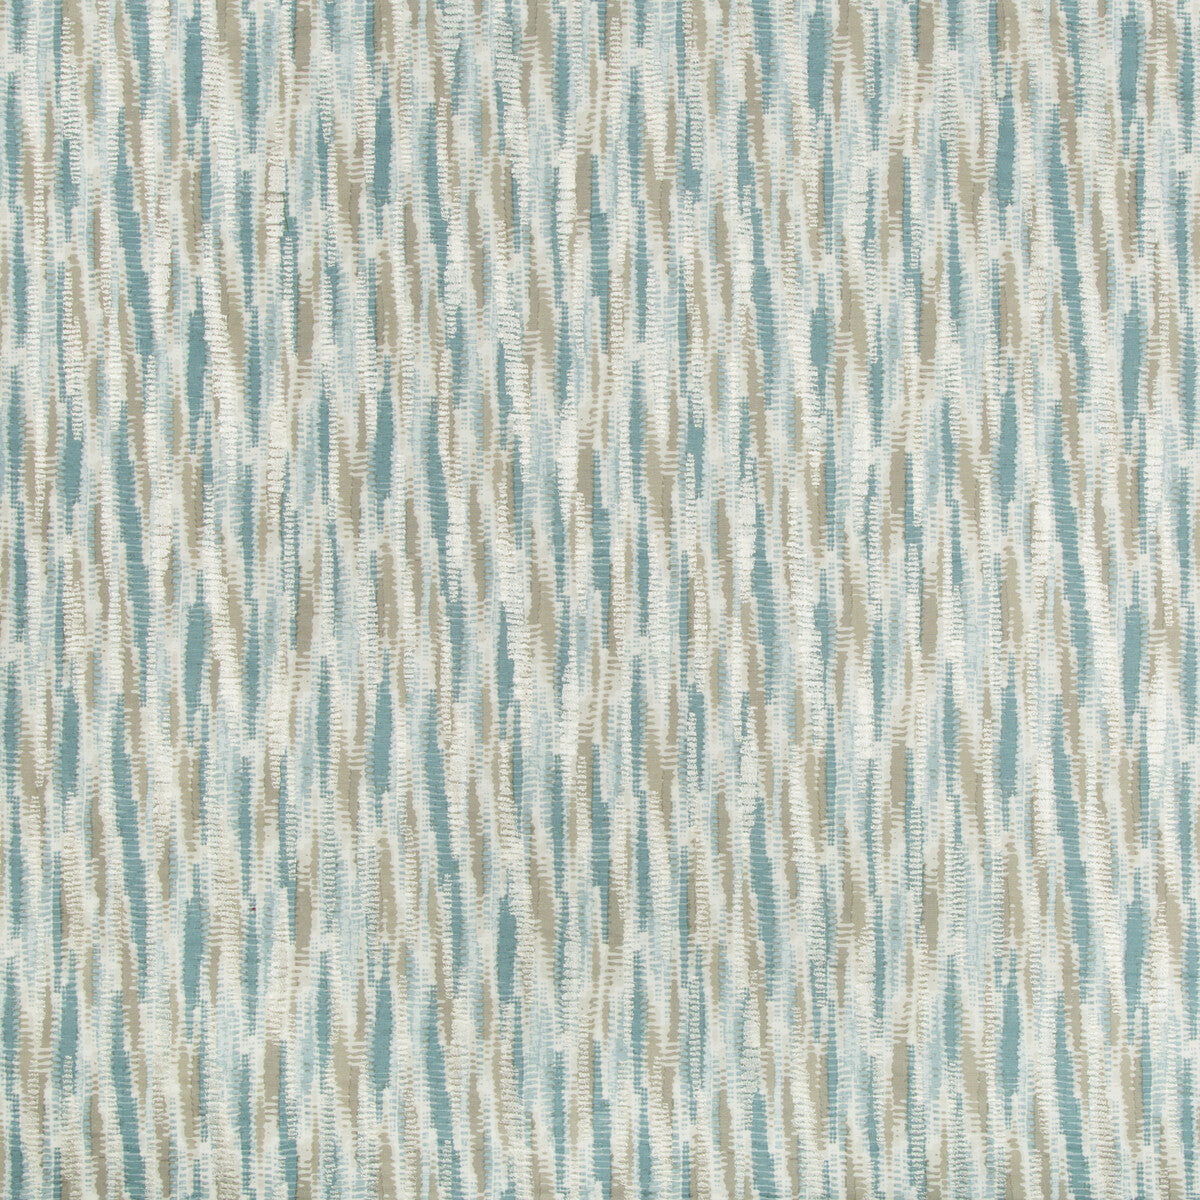 Kravet Basics fabric in kazuko-1516 color - pattern KAZUKO.1516.0 - by Kravet Basics